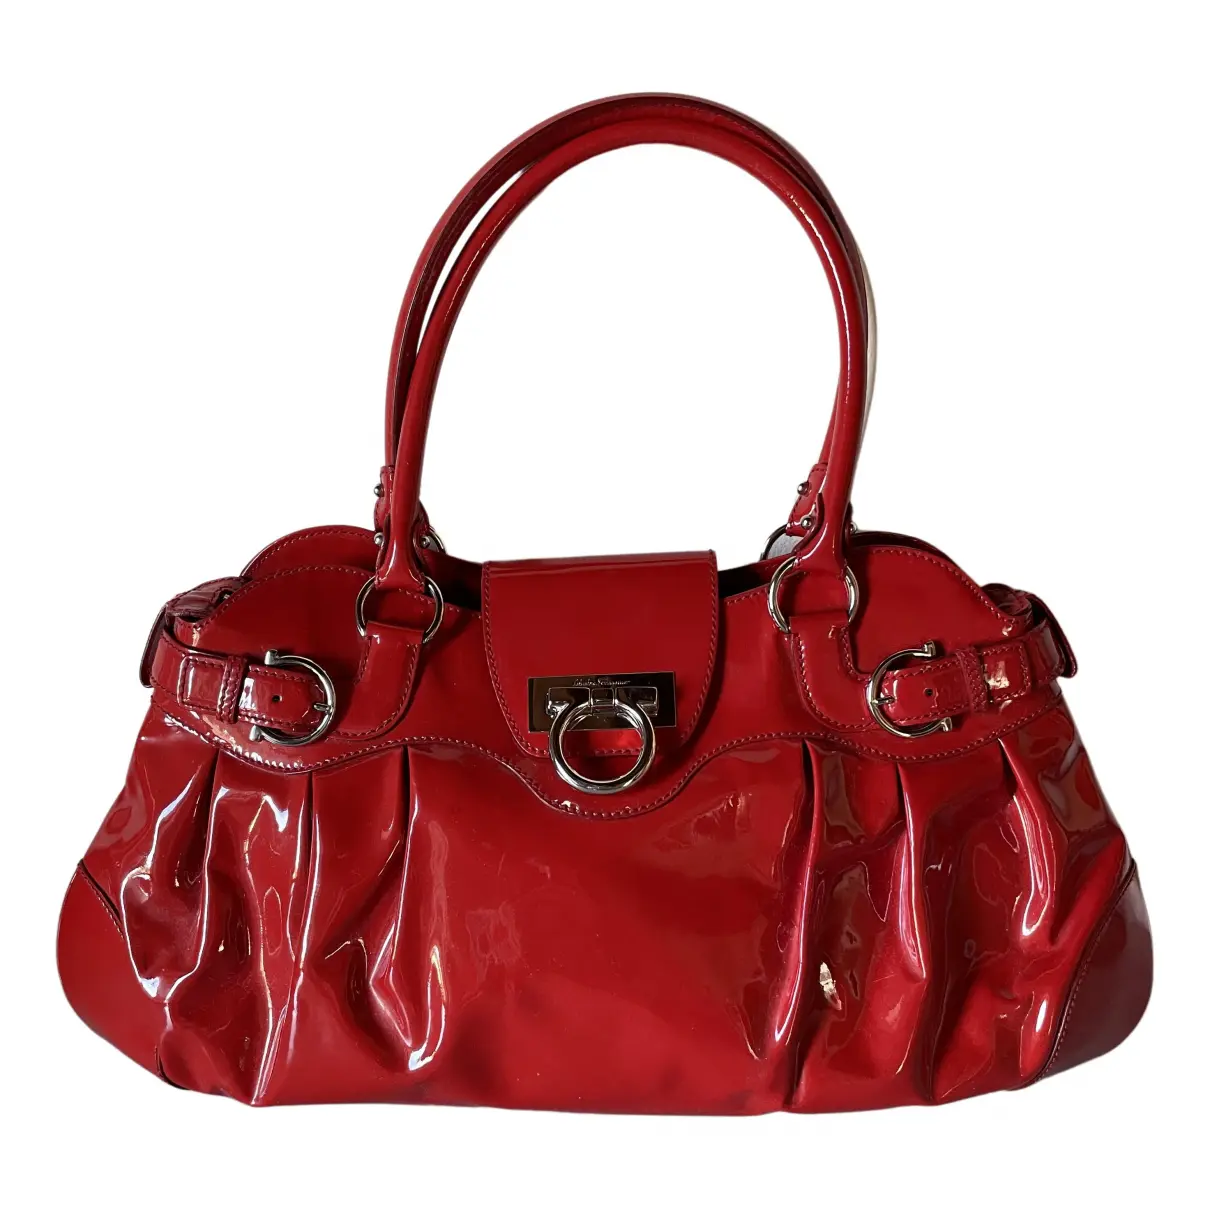 Patent leather handbag Salvatore Ferragamo